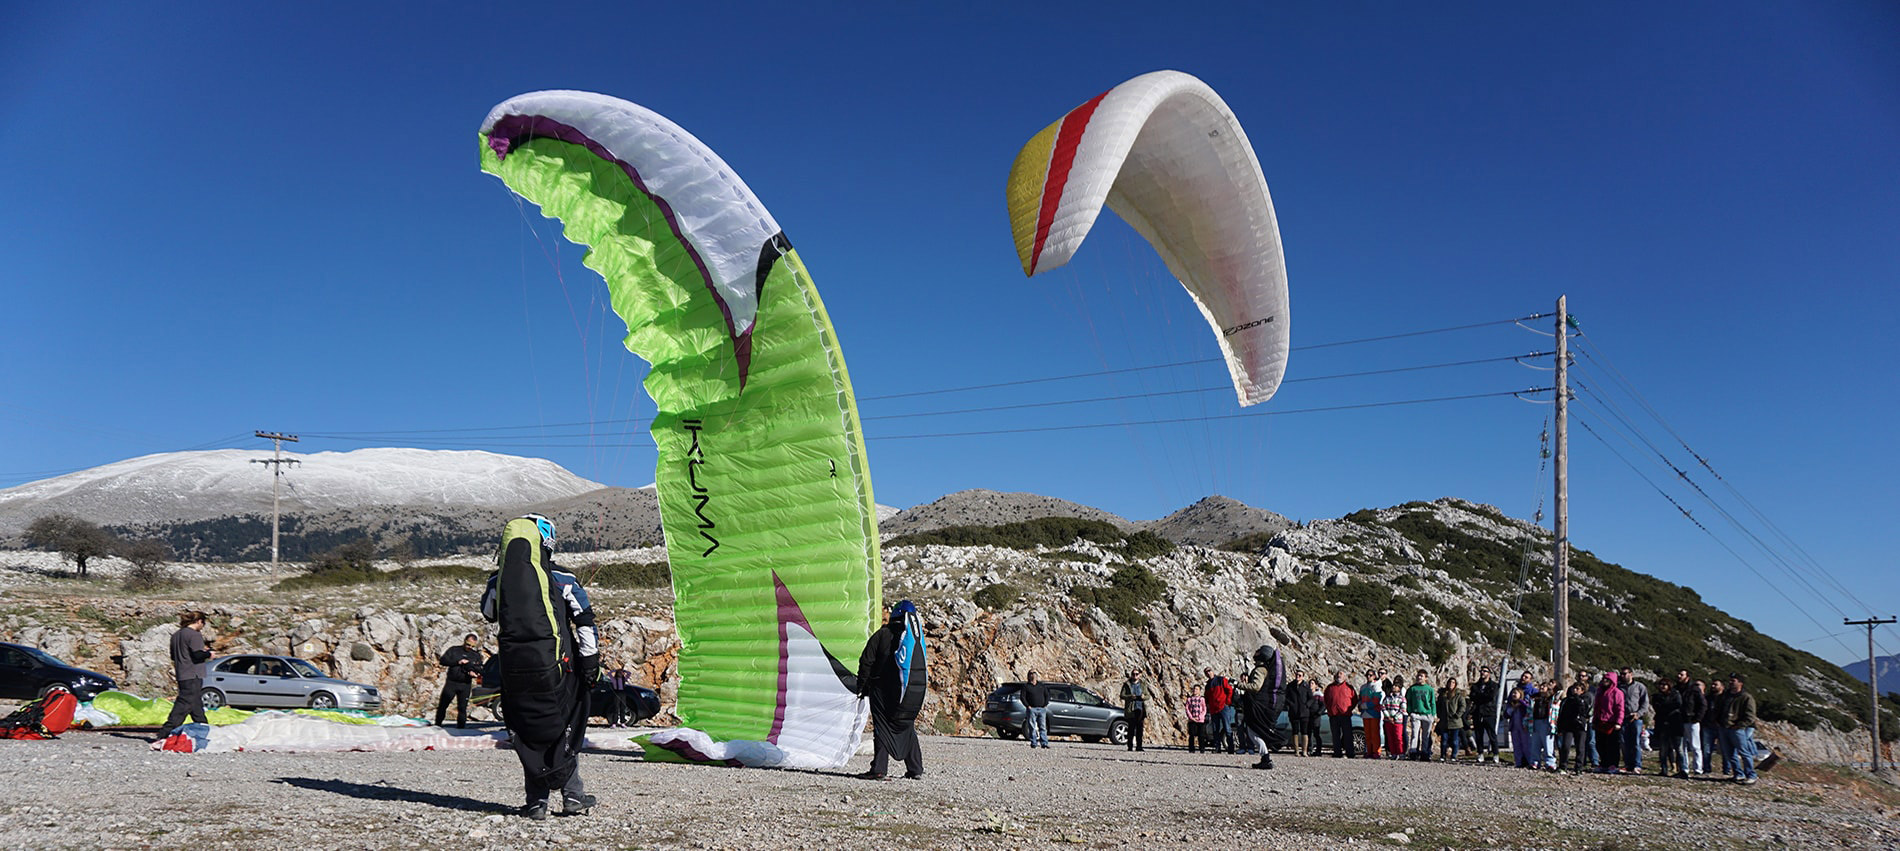 Η τρομακτική στιγμή που τουρίστες πέφτουν σε ηλεκτροφόρα καλώδια κάνοντας parasailing (βίντεο)